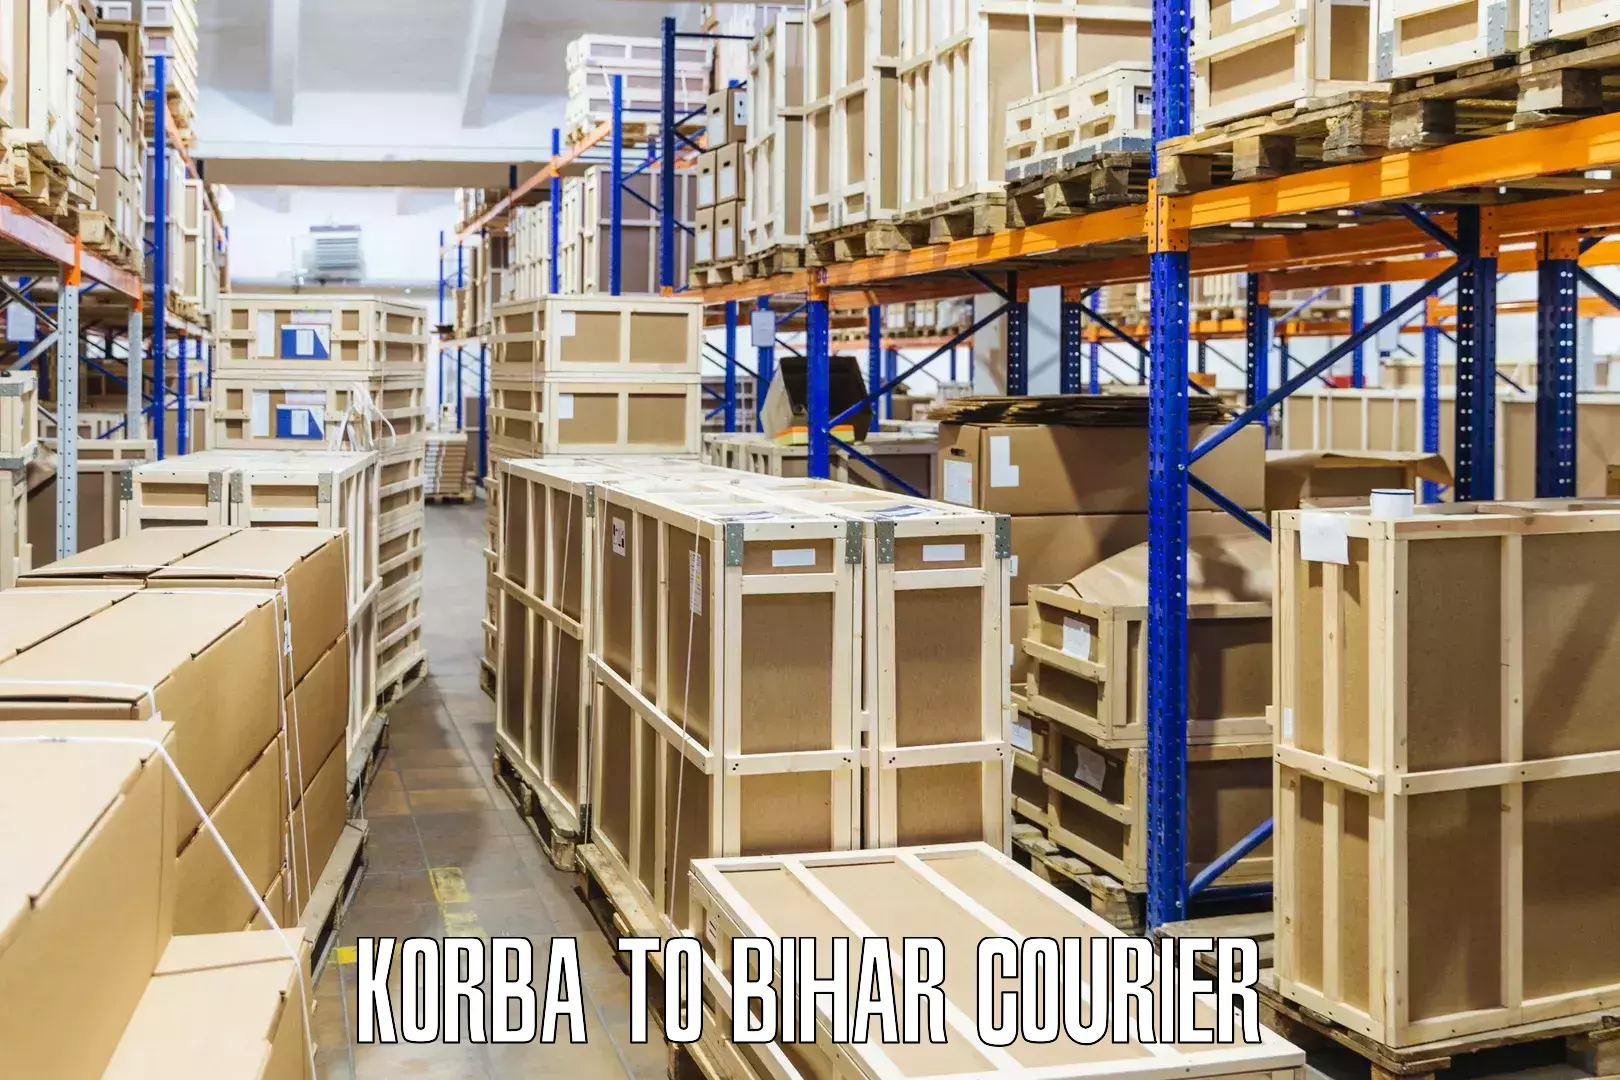 Reliable courier service Korba to Katoria